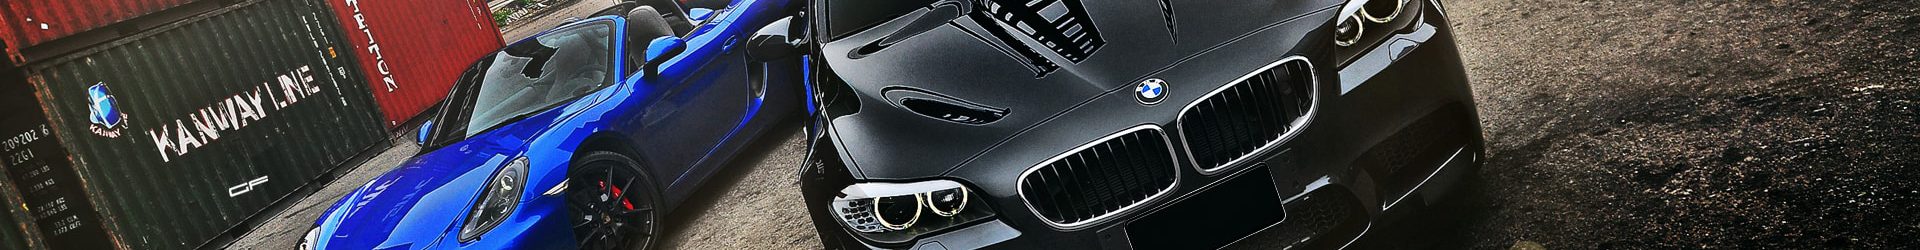 –領先級距– BMW E92 M3 拍攝分享